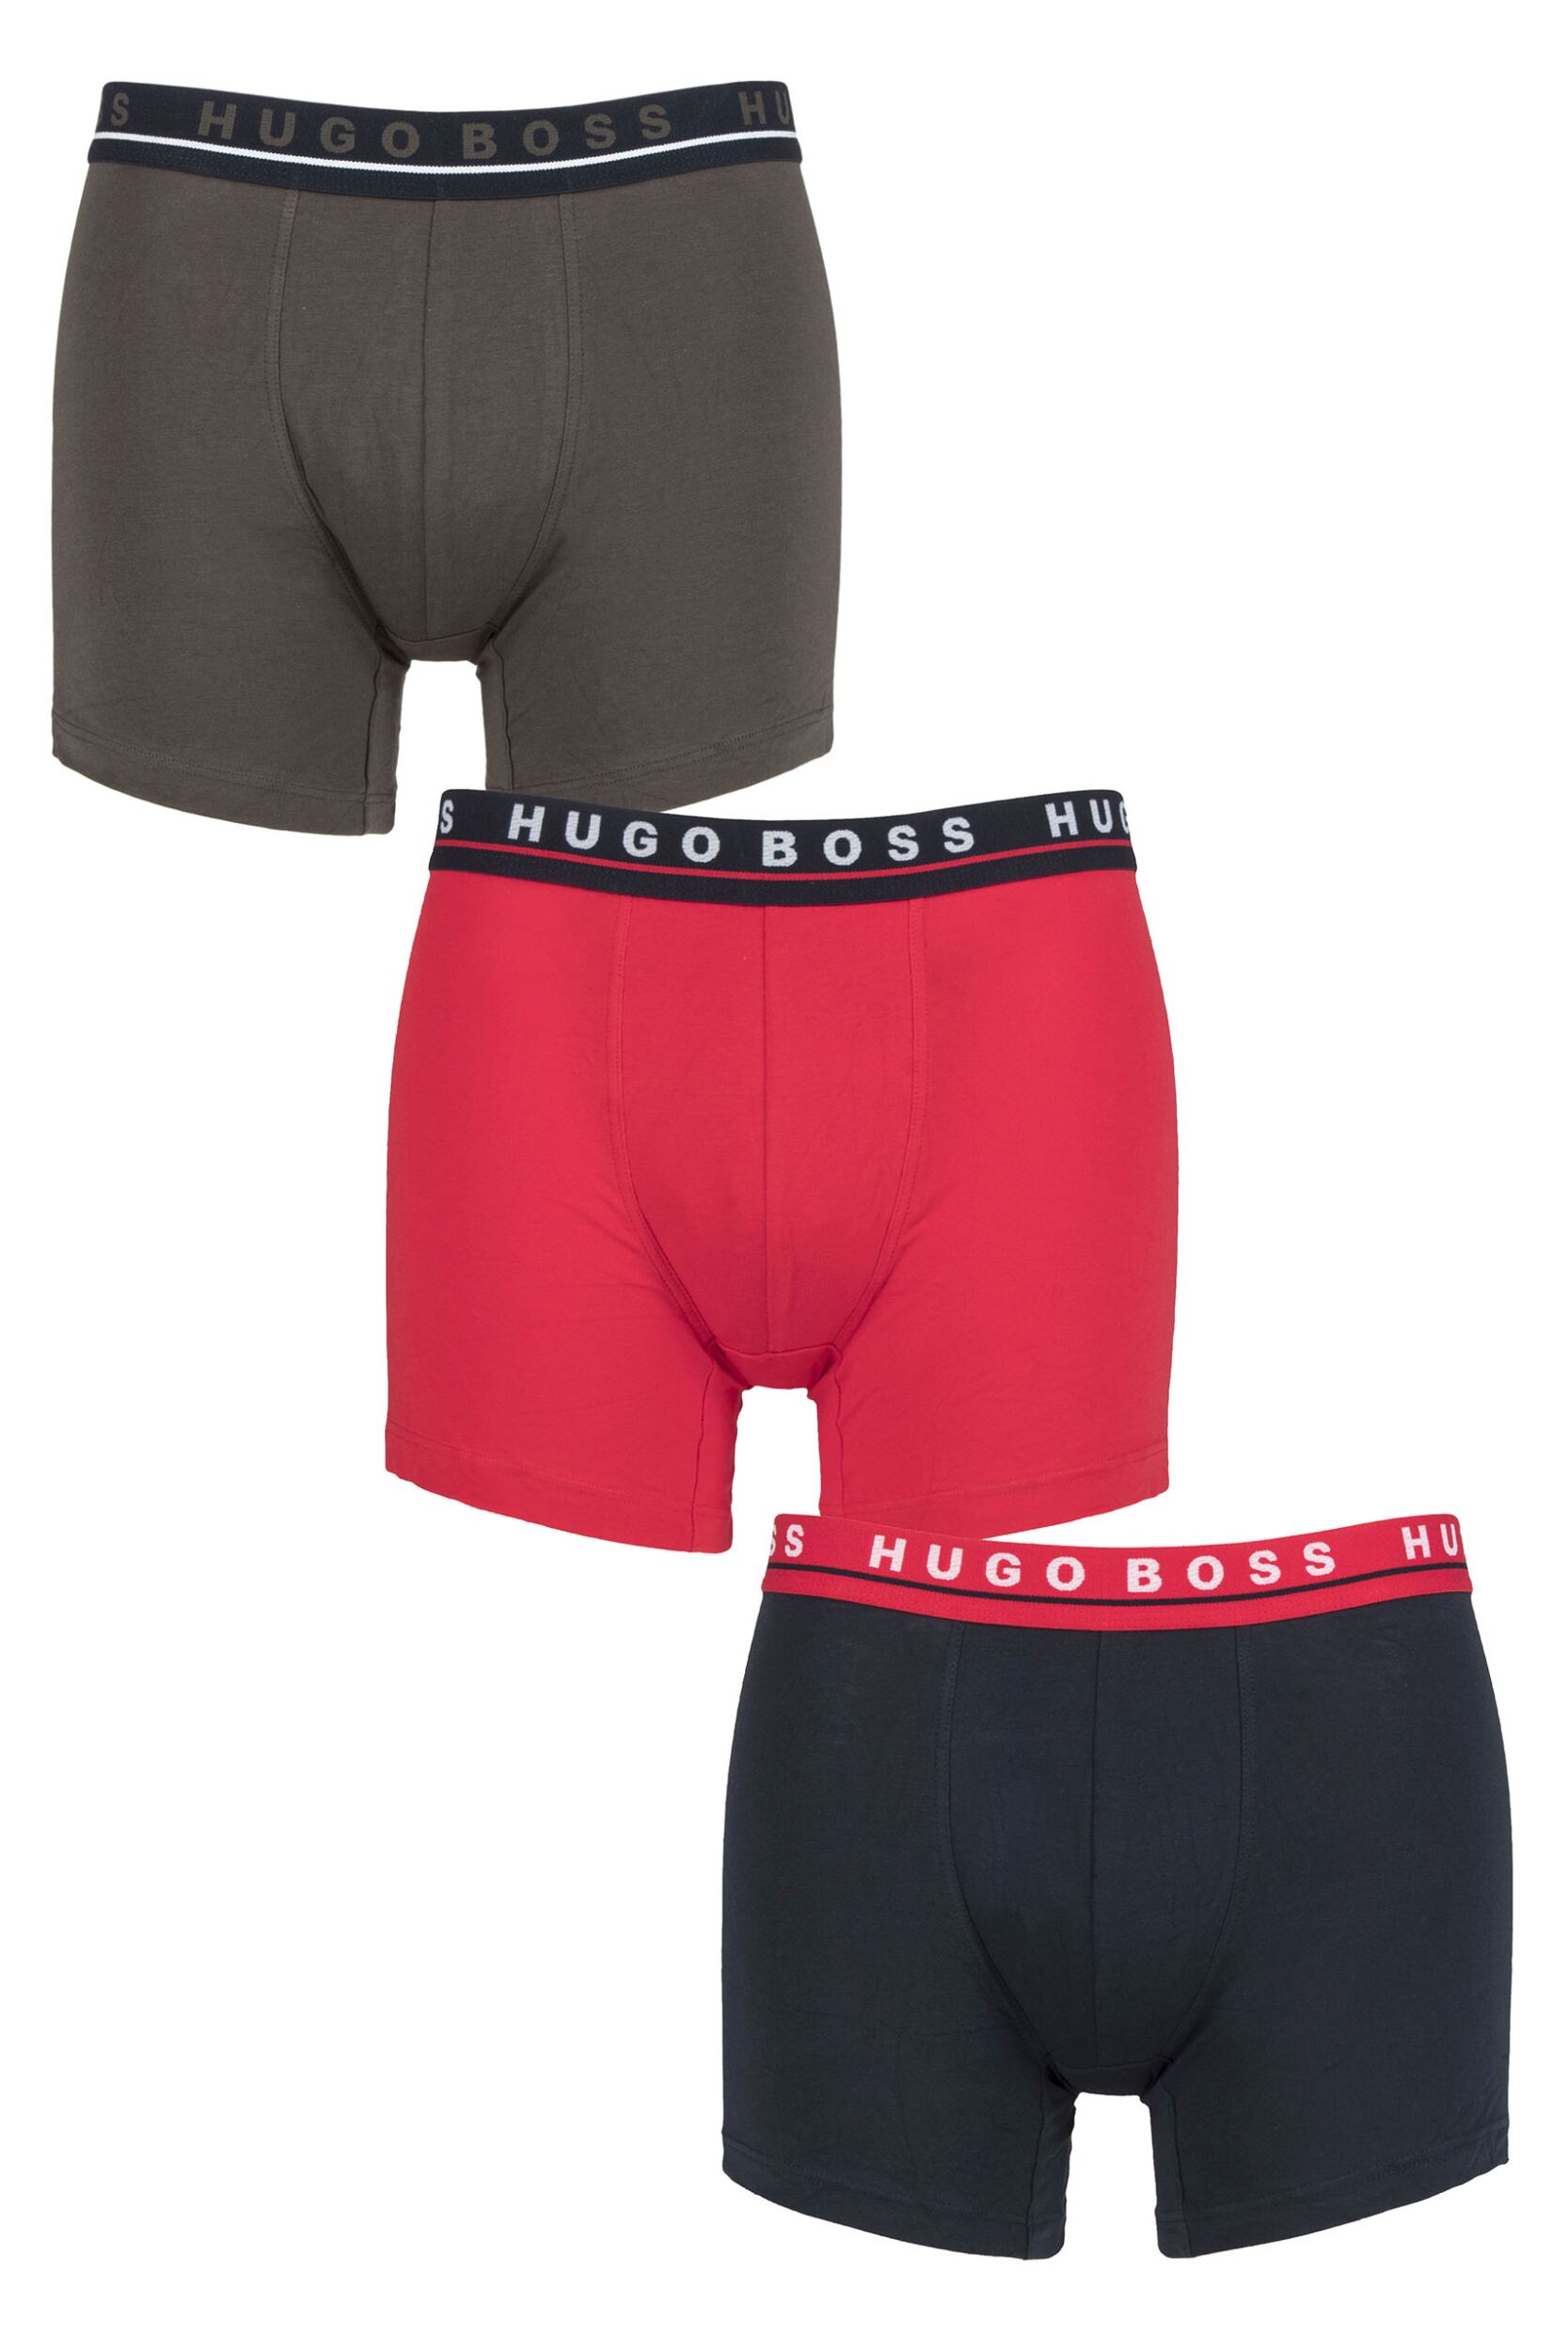 Mens 3 Pack BOSS Cotton Contrast Waistband Longer Leg Boxer Briefs Navy / Grey / Red Medium